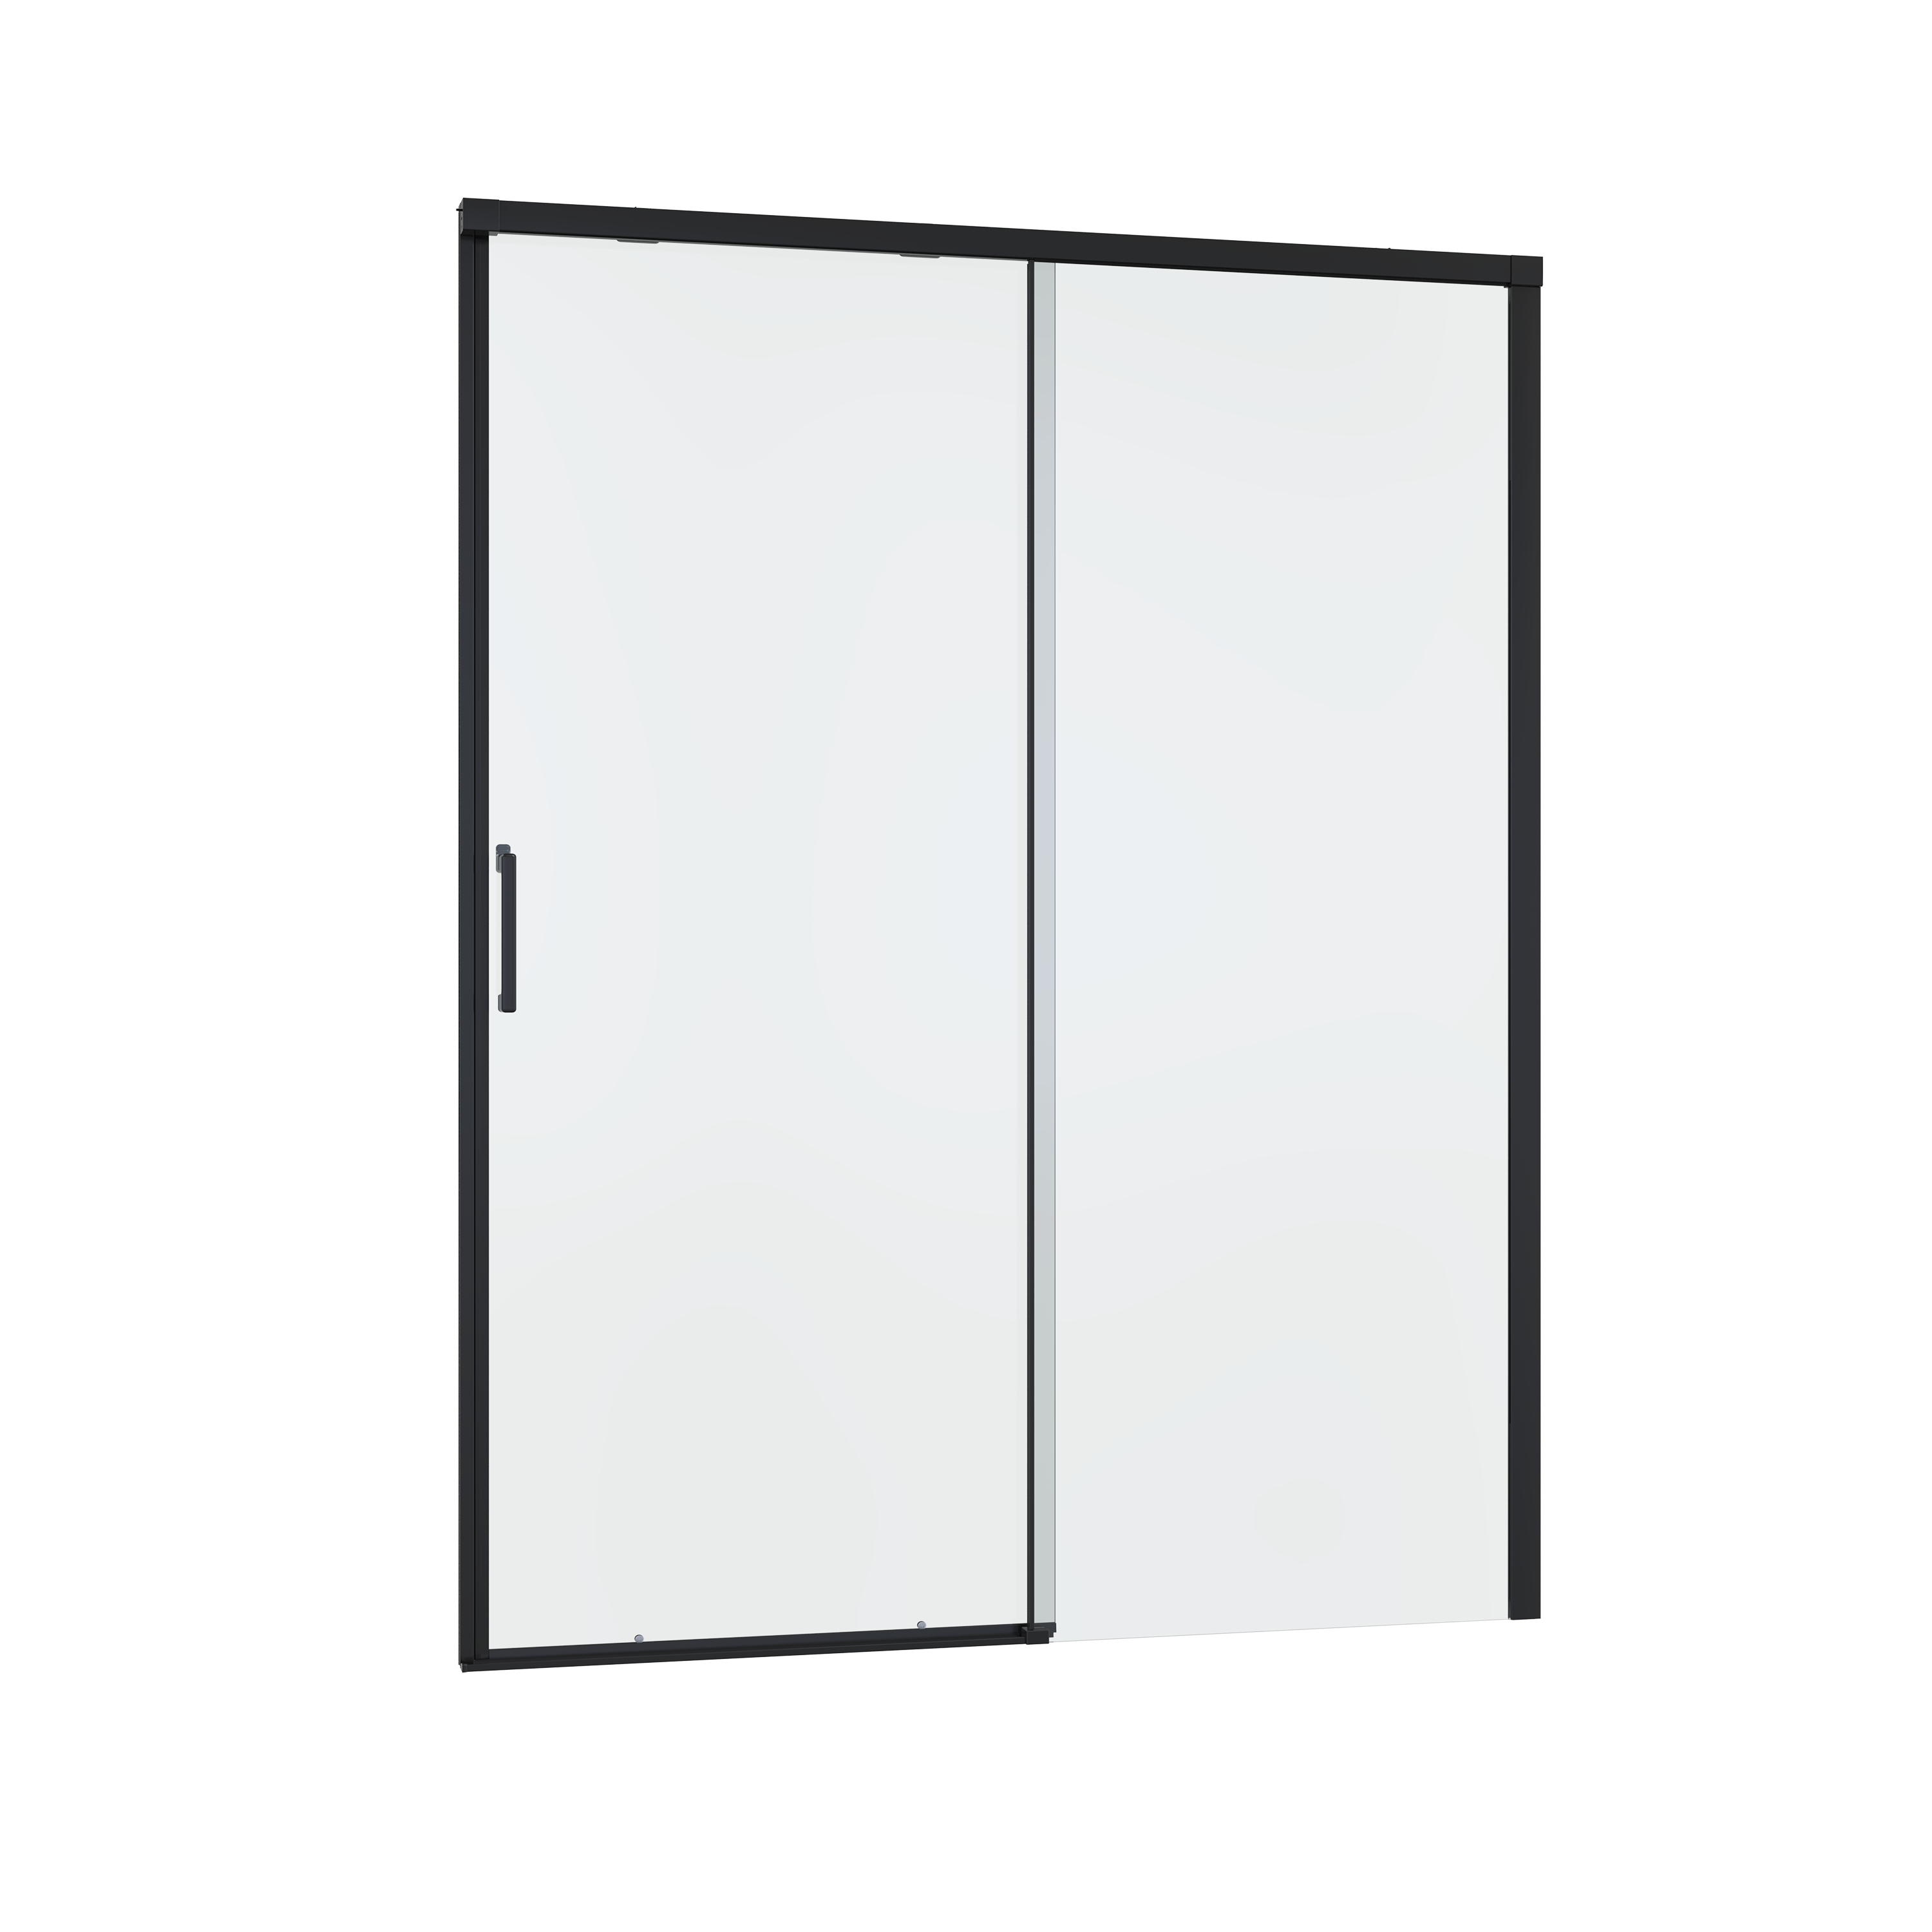 Porta doccia 1 anta fissa + 1 anta scorrevole Remix 160 cm, H 195 cm in vetro, spessore 8 mm trasparente nero - 7